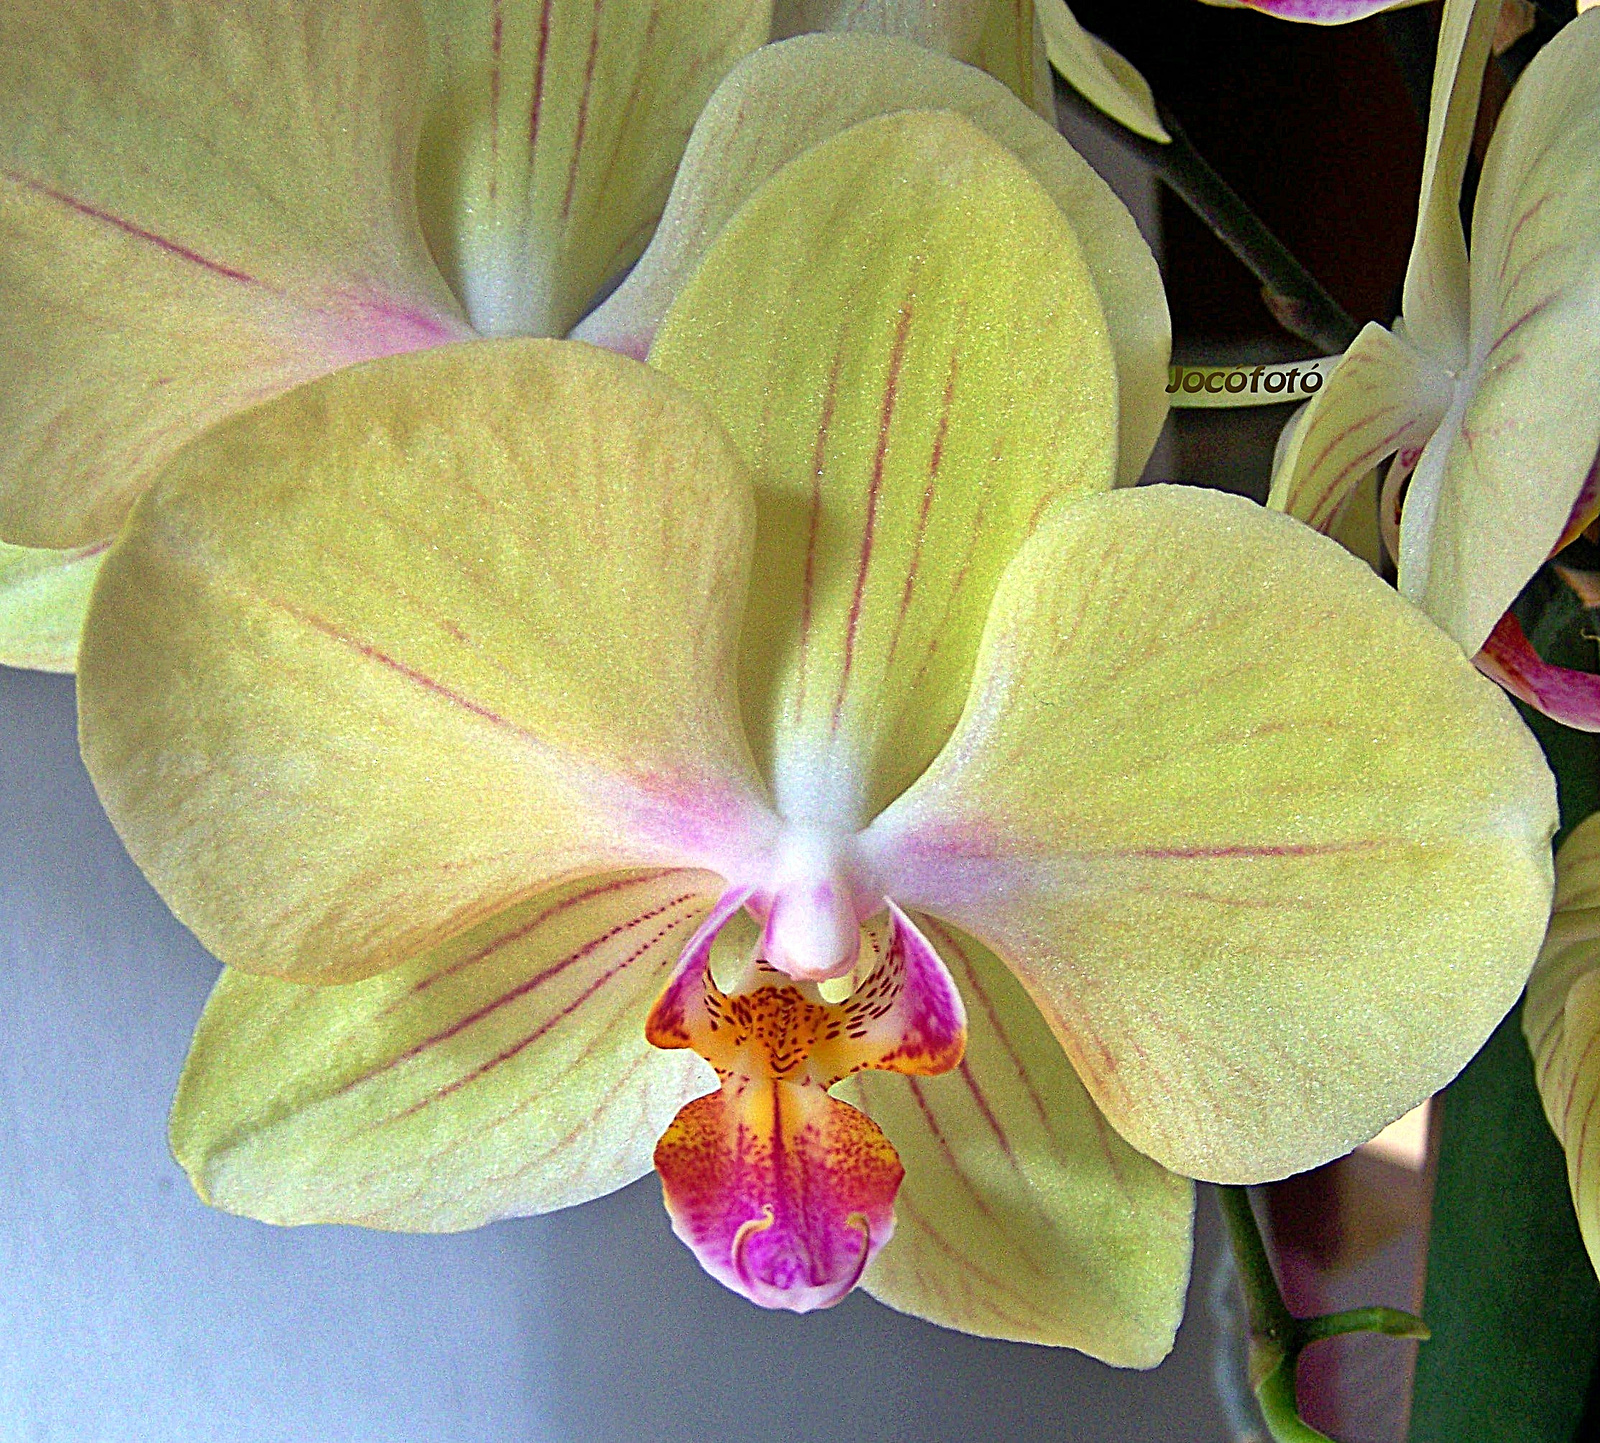 Orchidea 7941